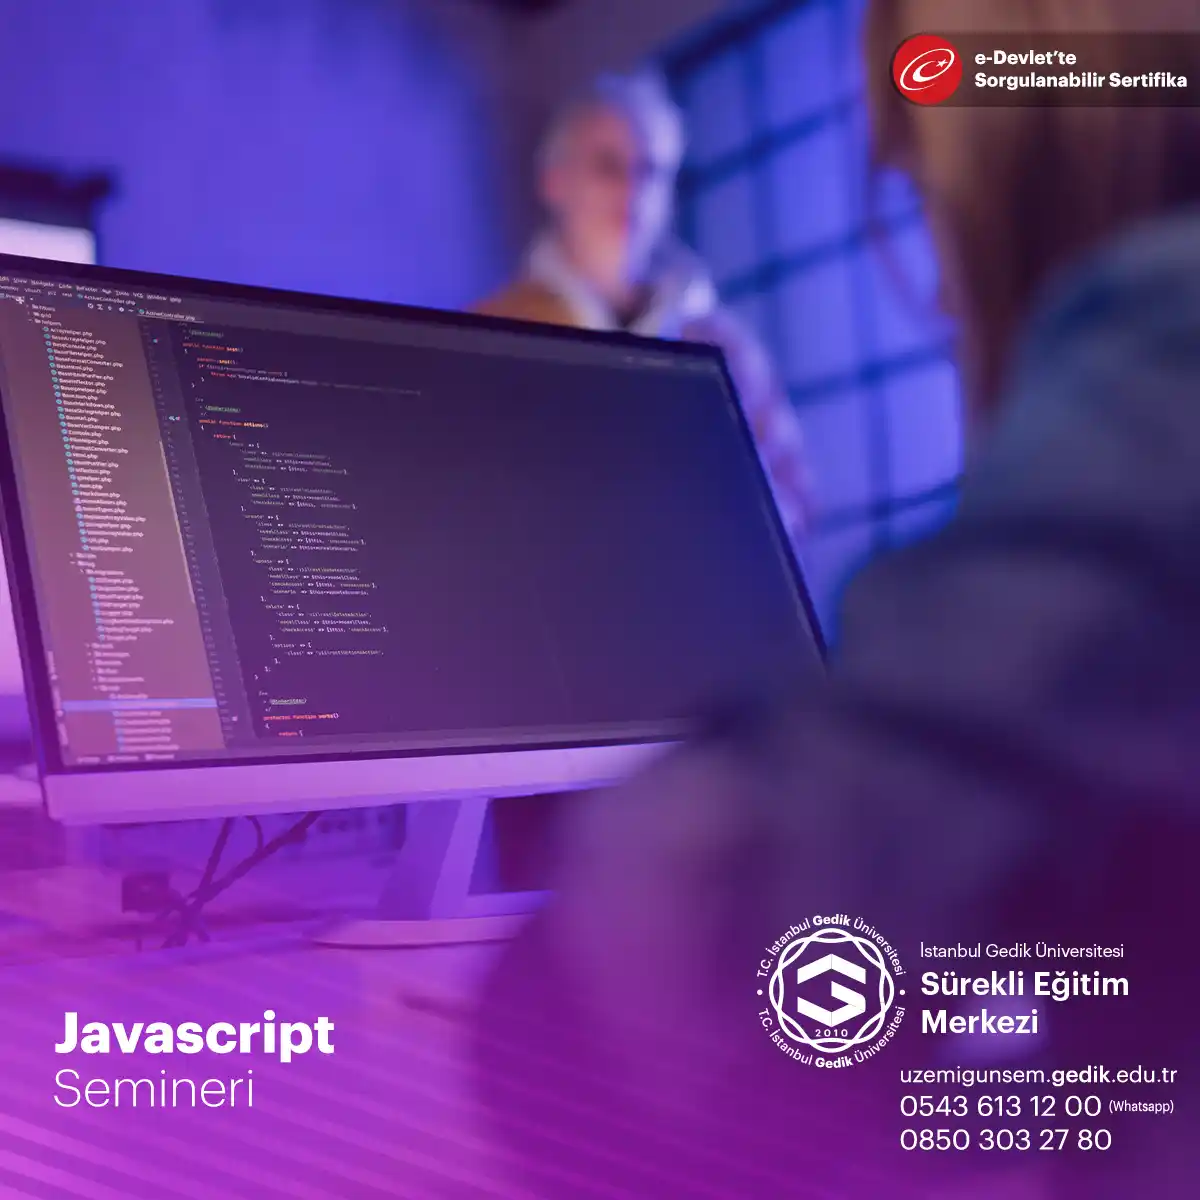 Tarayıcı tarafında çalışabilen bir dil olan JavaScript, web sayfalarına dinamizm, etkileşim ve kullanıcı deneyimi eklemek için kullanılır.